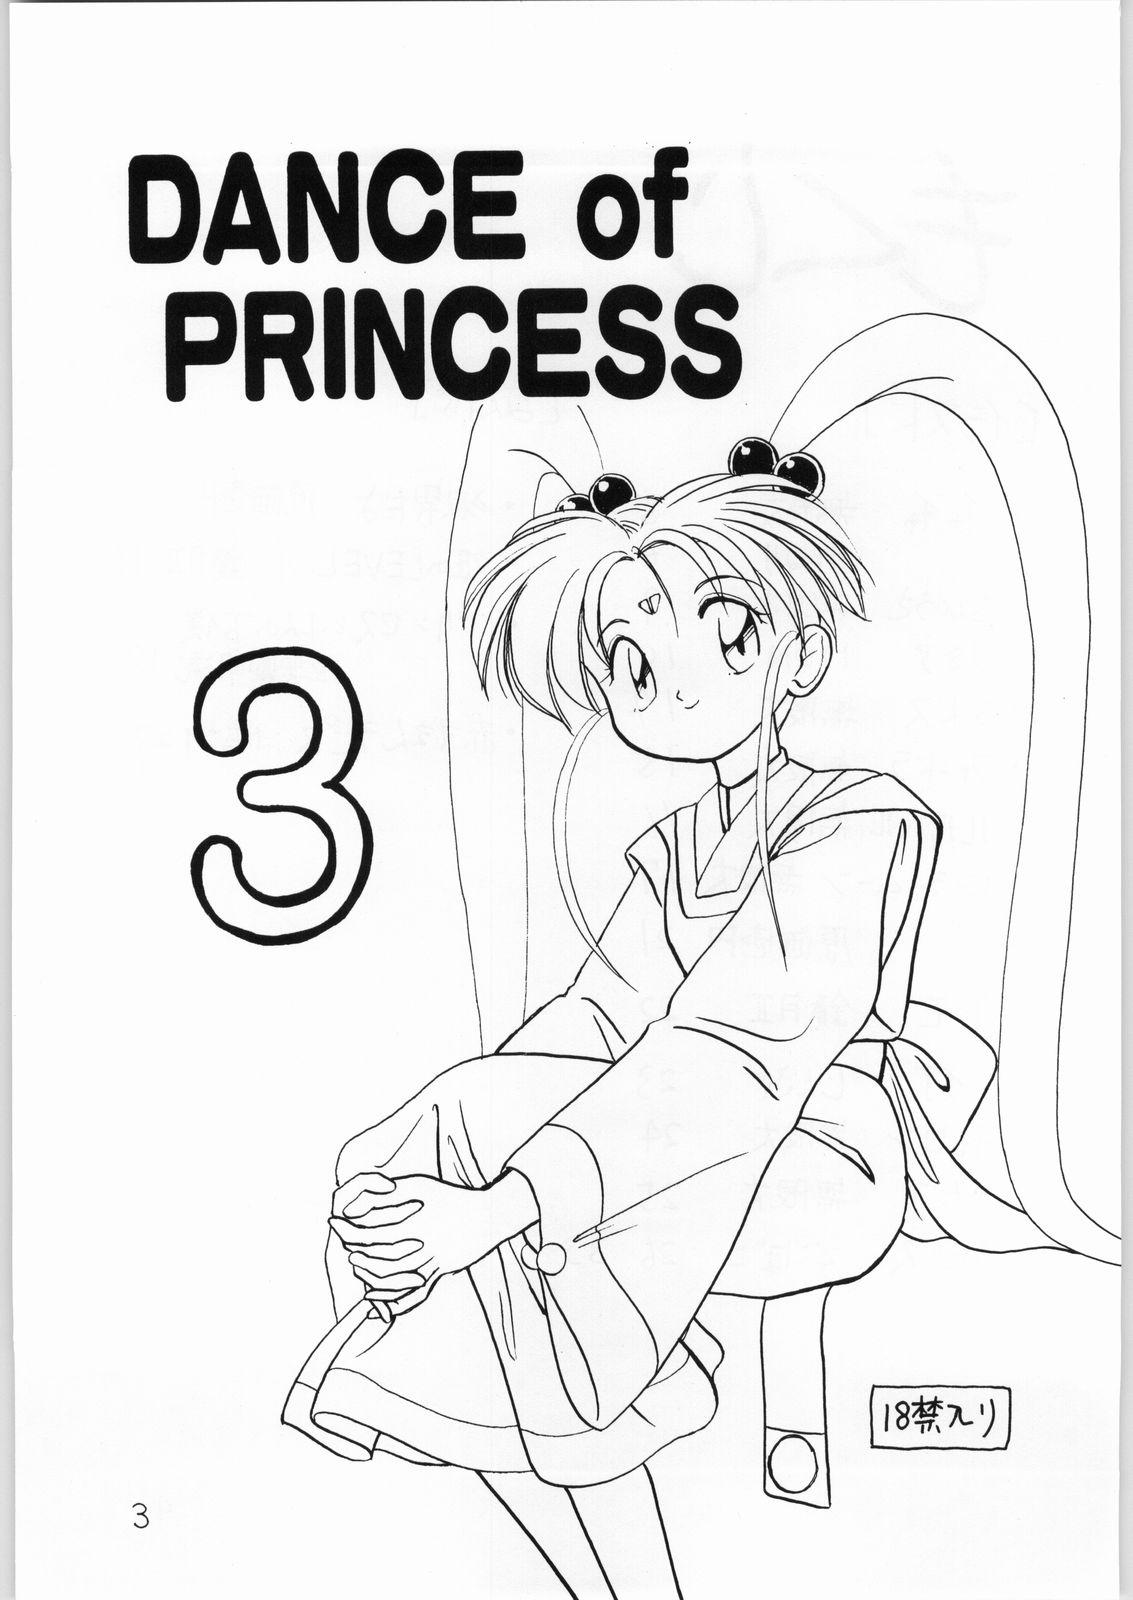 Bdsm Dance of Princess 3 - Sailor moon Tenchi muyo Akazukin cha cha Minky momo Ng knight lamune and 40 Stepbrother - Page 2